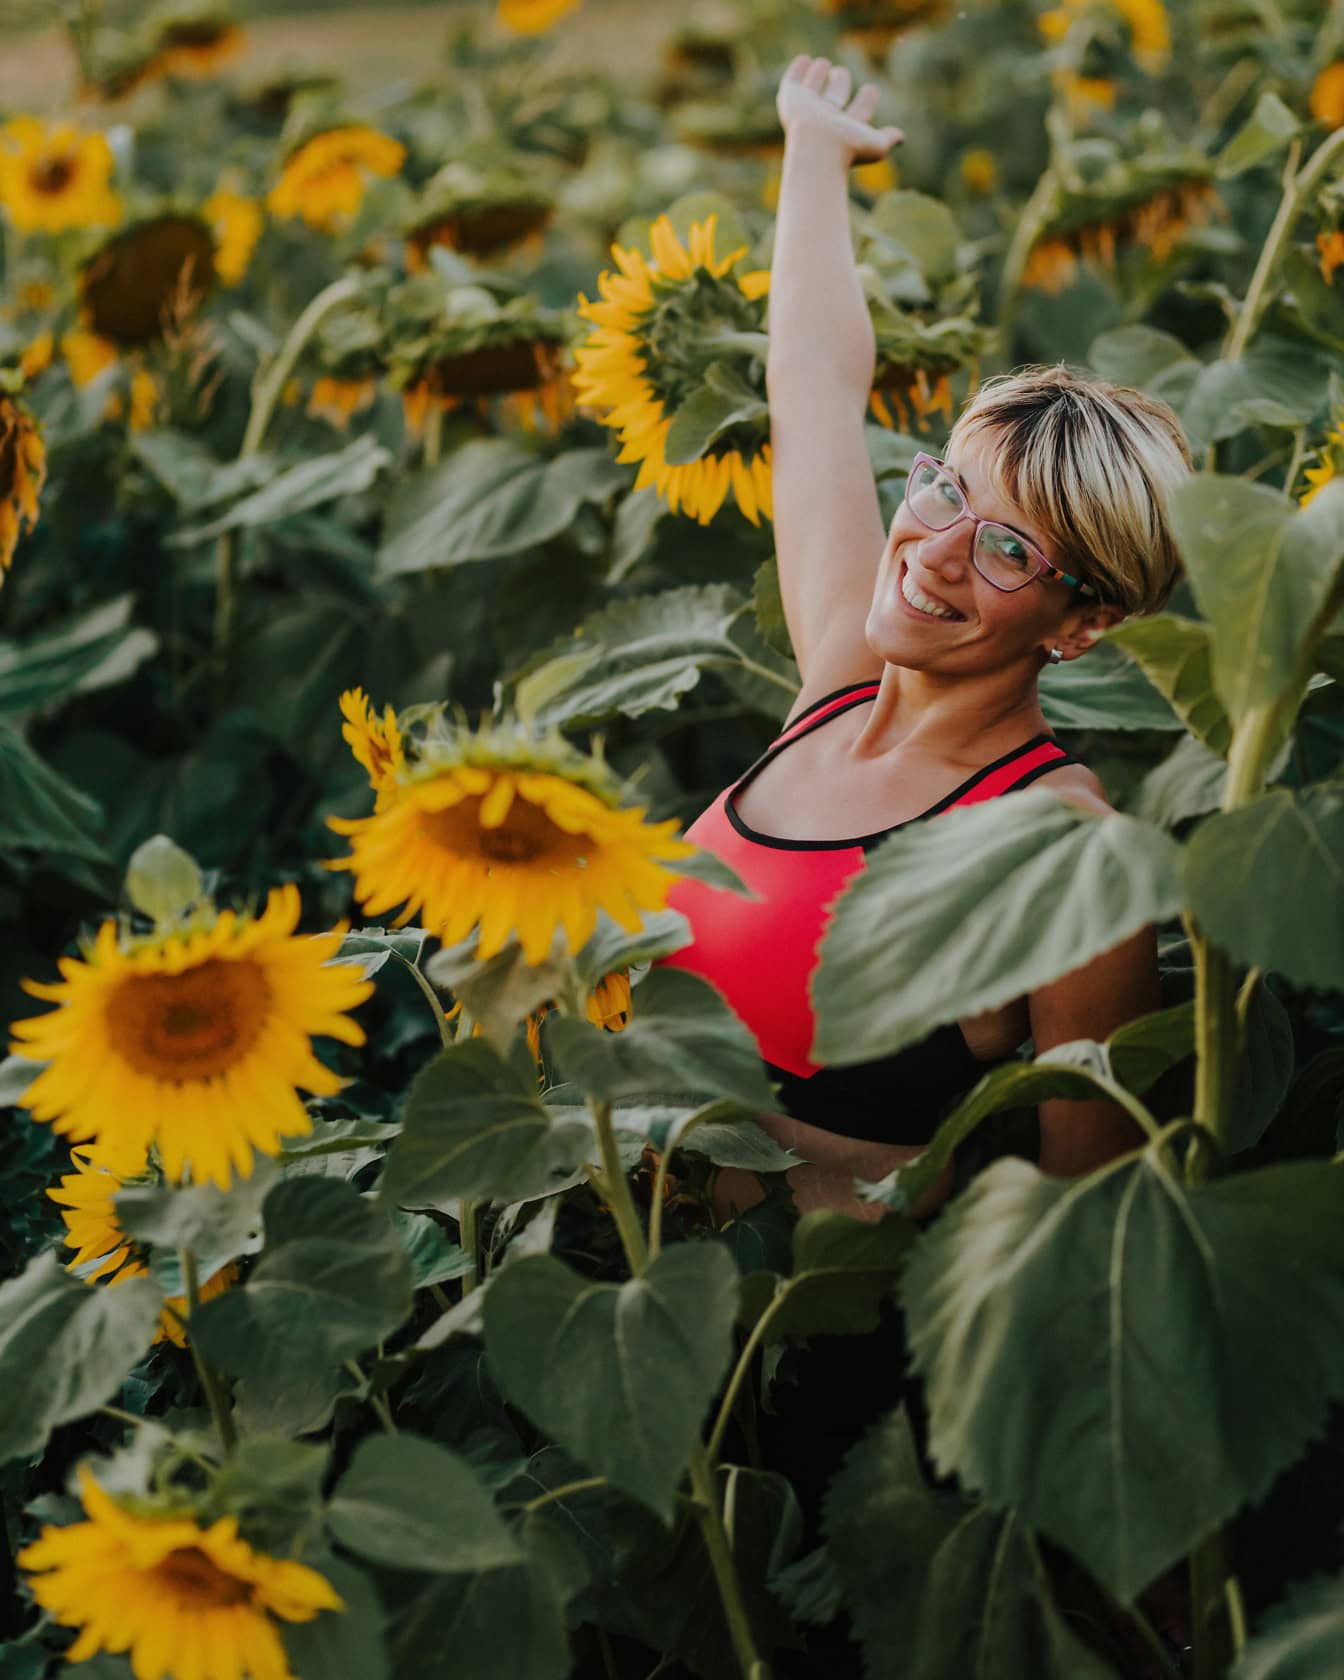 Porträt einer glücklich lächelnden jungen Frau mit kurzer blonder Frisur in einem Sonnenblumenfeld mit erhobener Hand in der Luft